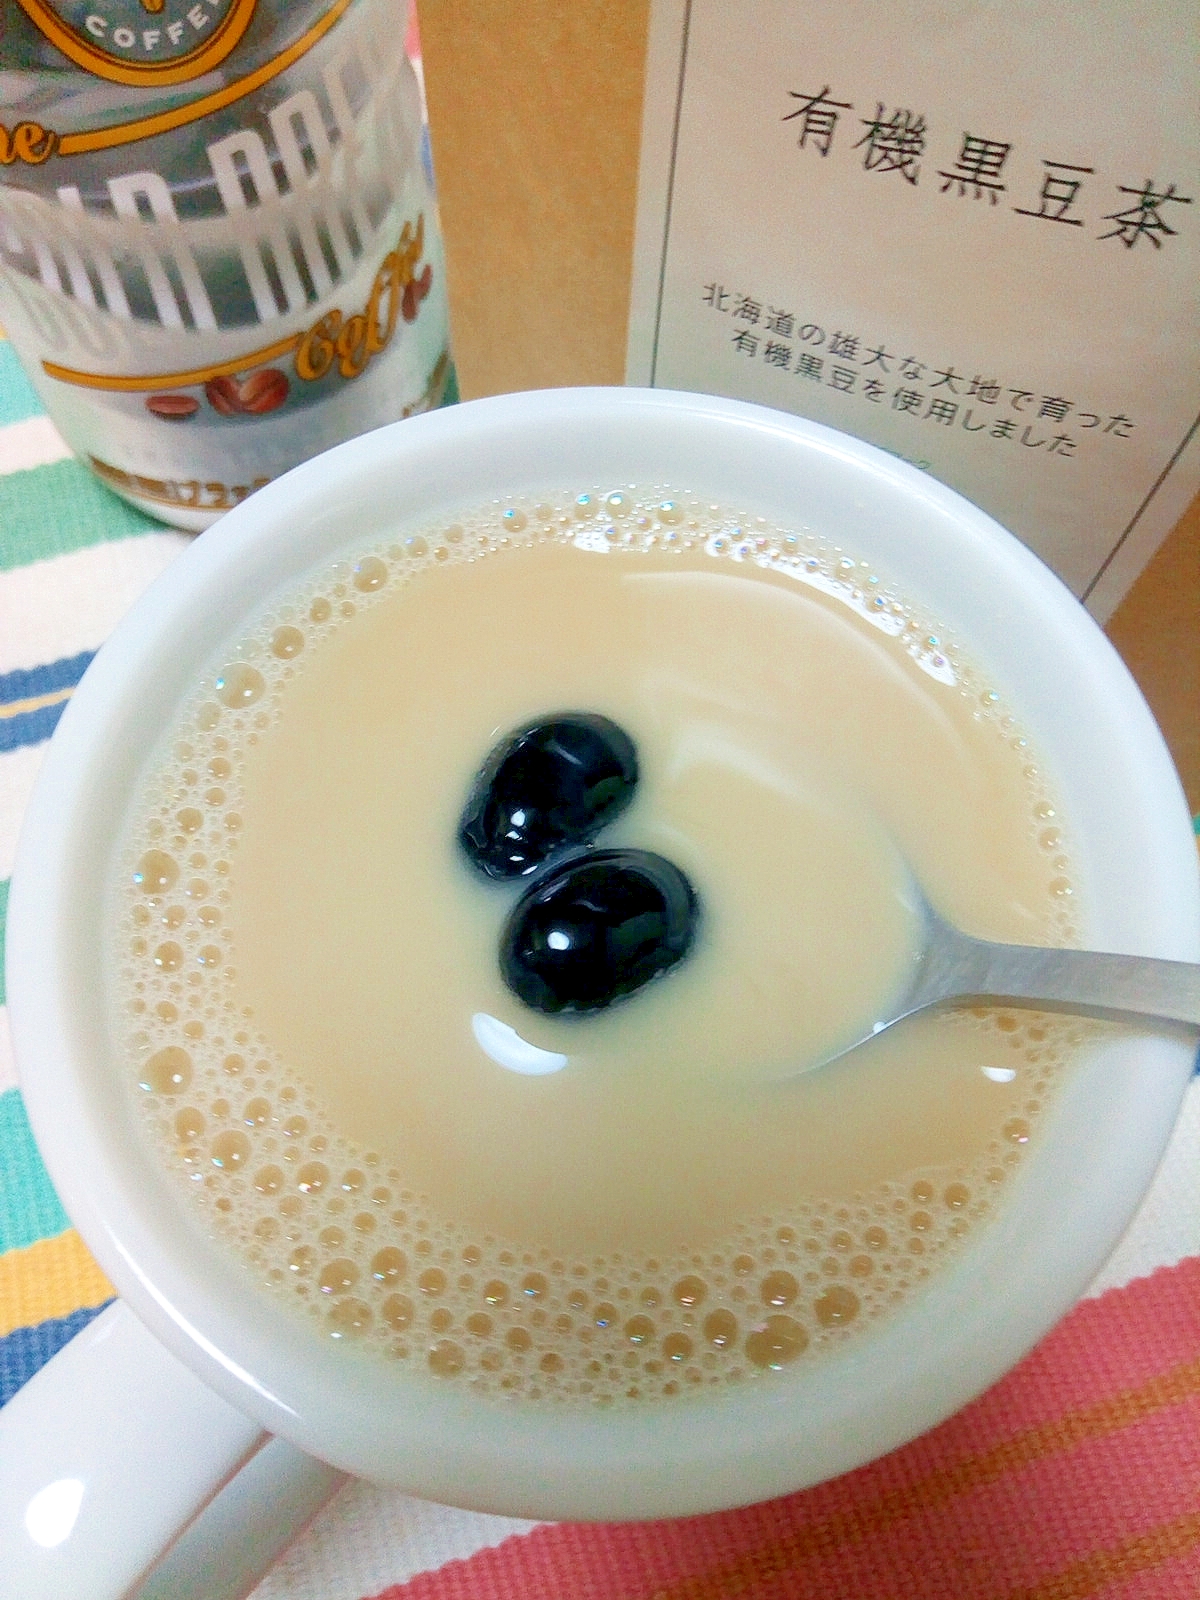 白いカップに入った黒豆茶ときな粉のカフェオレに黒豆がトッピングされている